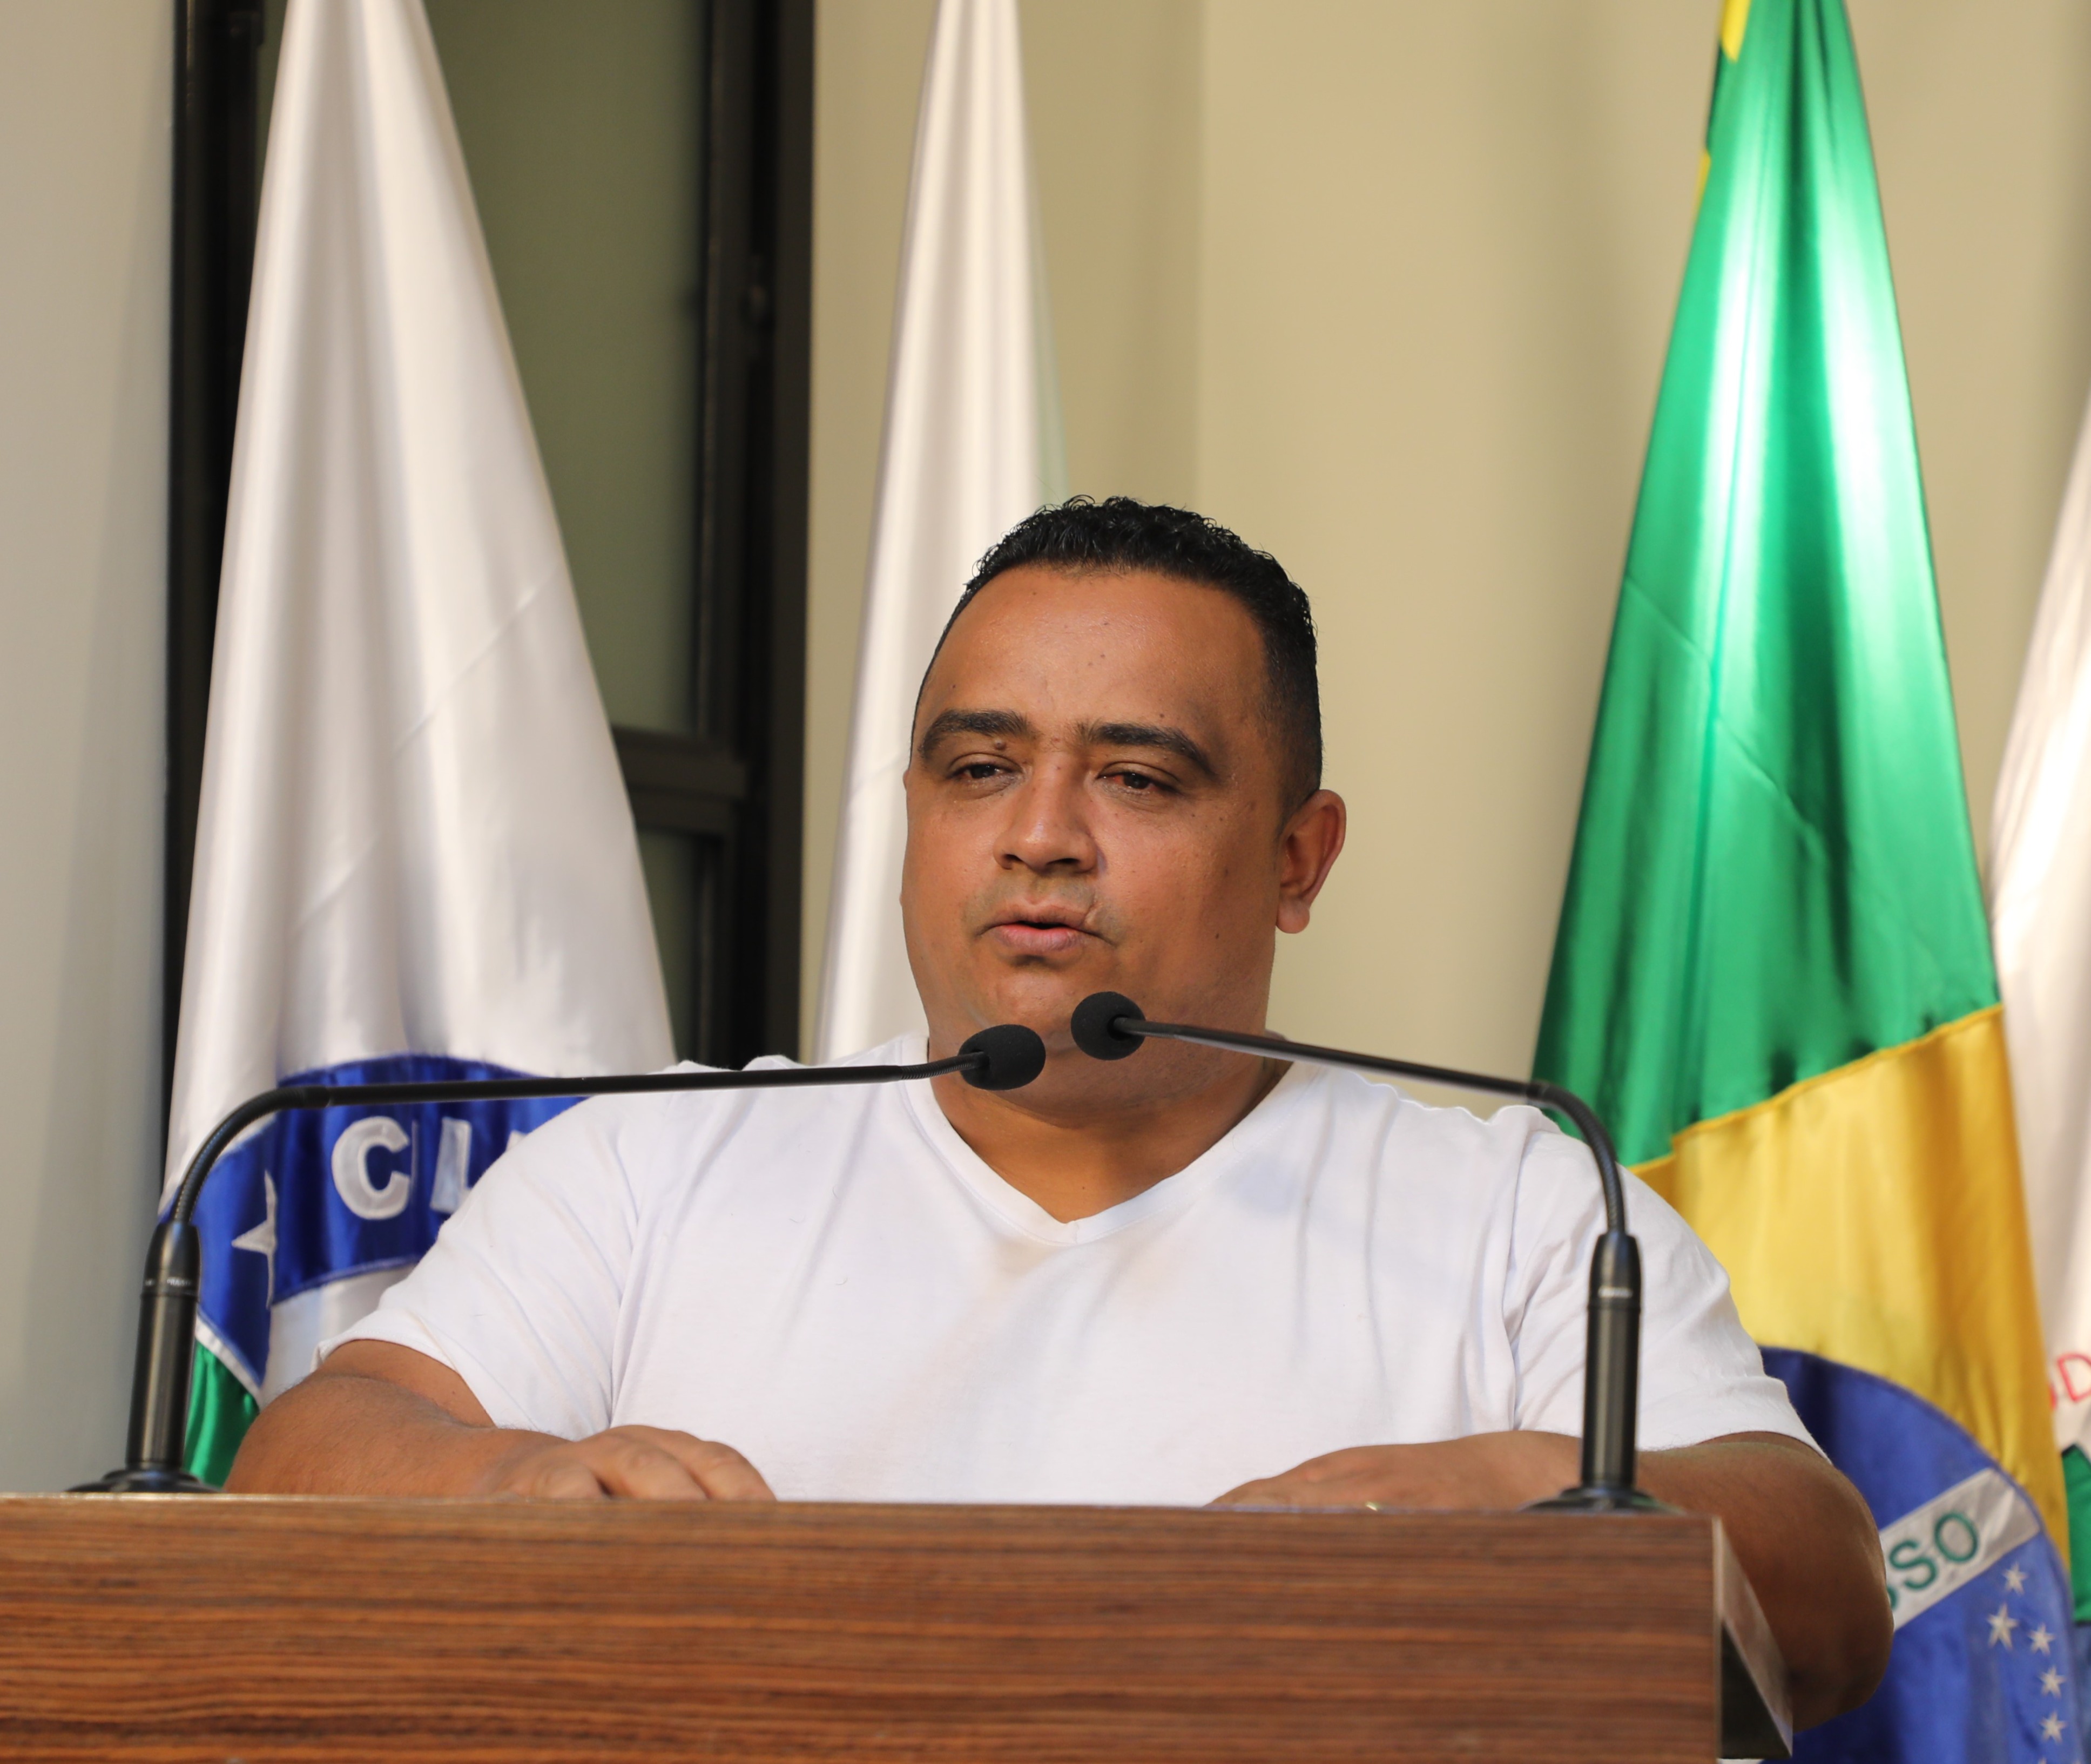 Vereador Robson Souza (PSB) Presidente da Comissão de Direitos Humanos, Cidadania, Prevenção e Segurança Pública